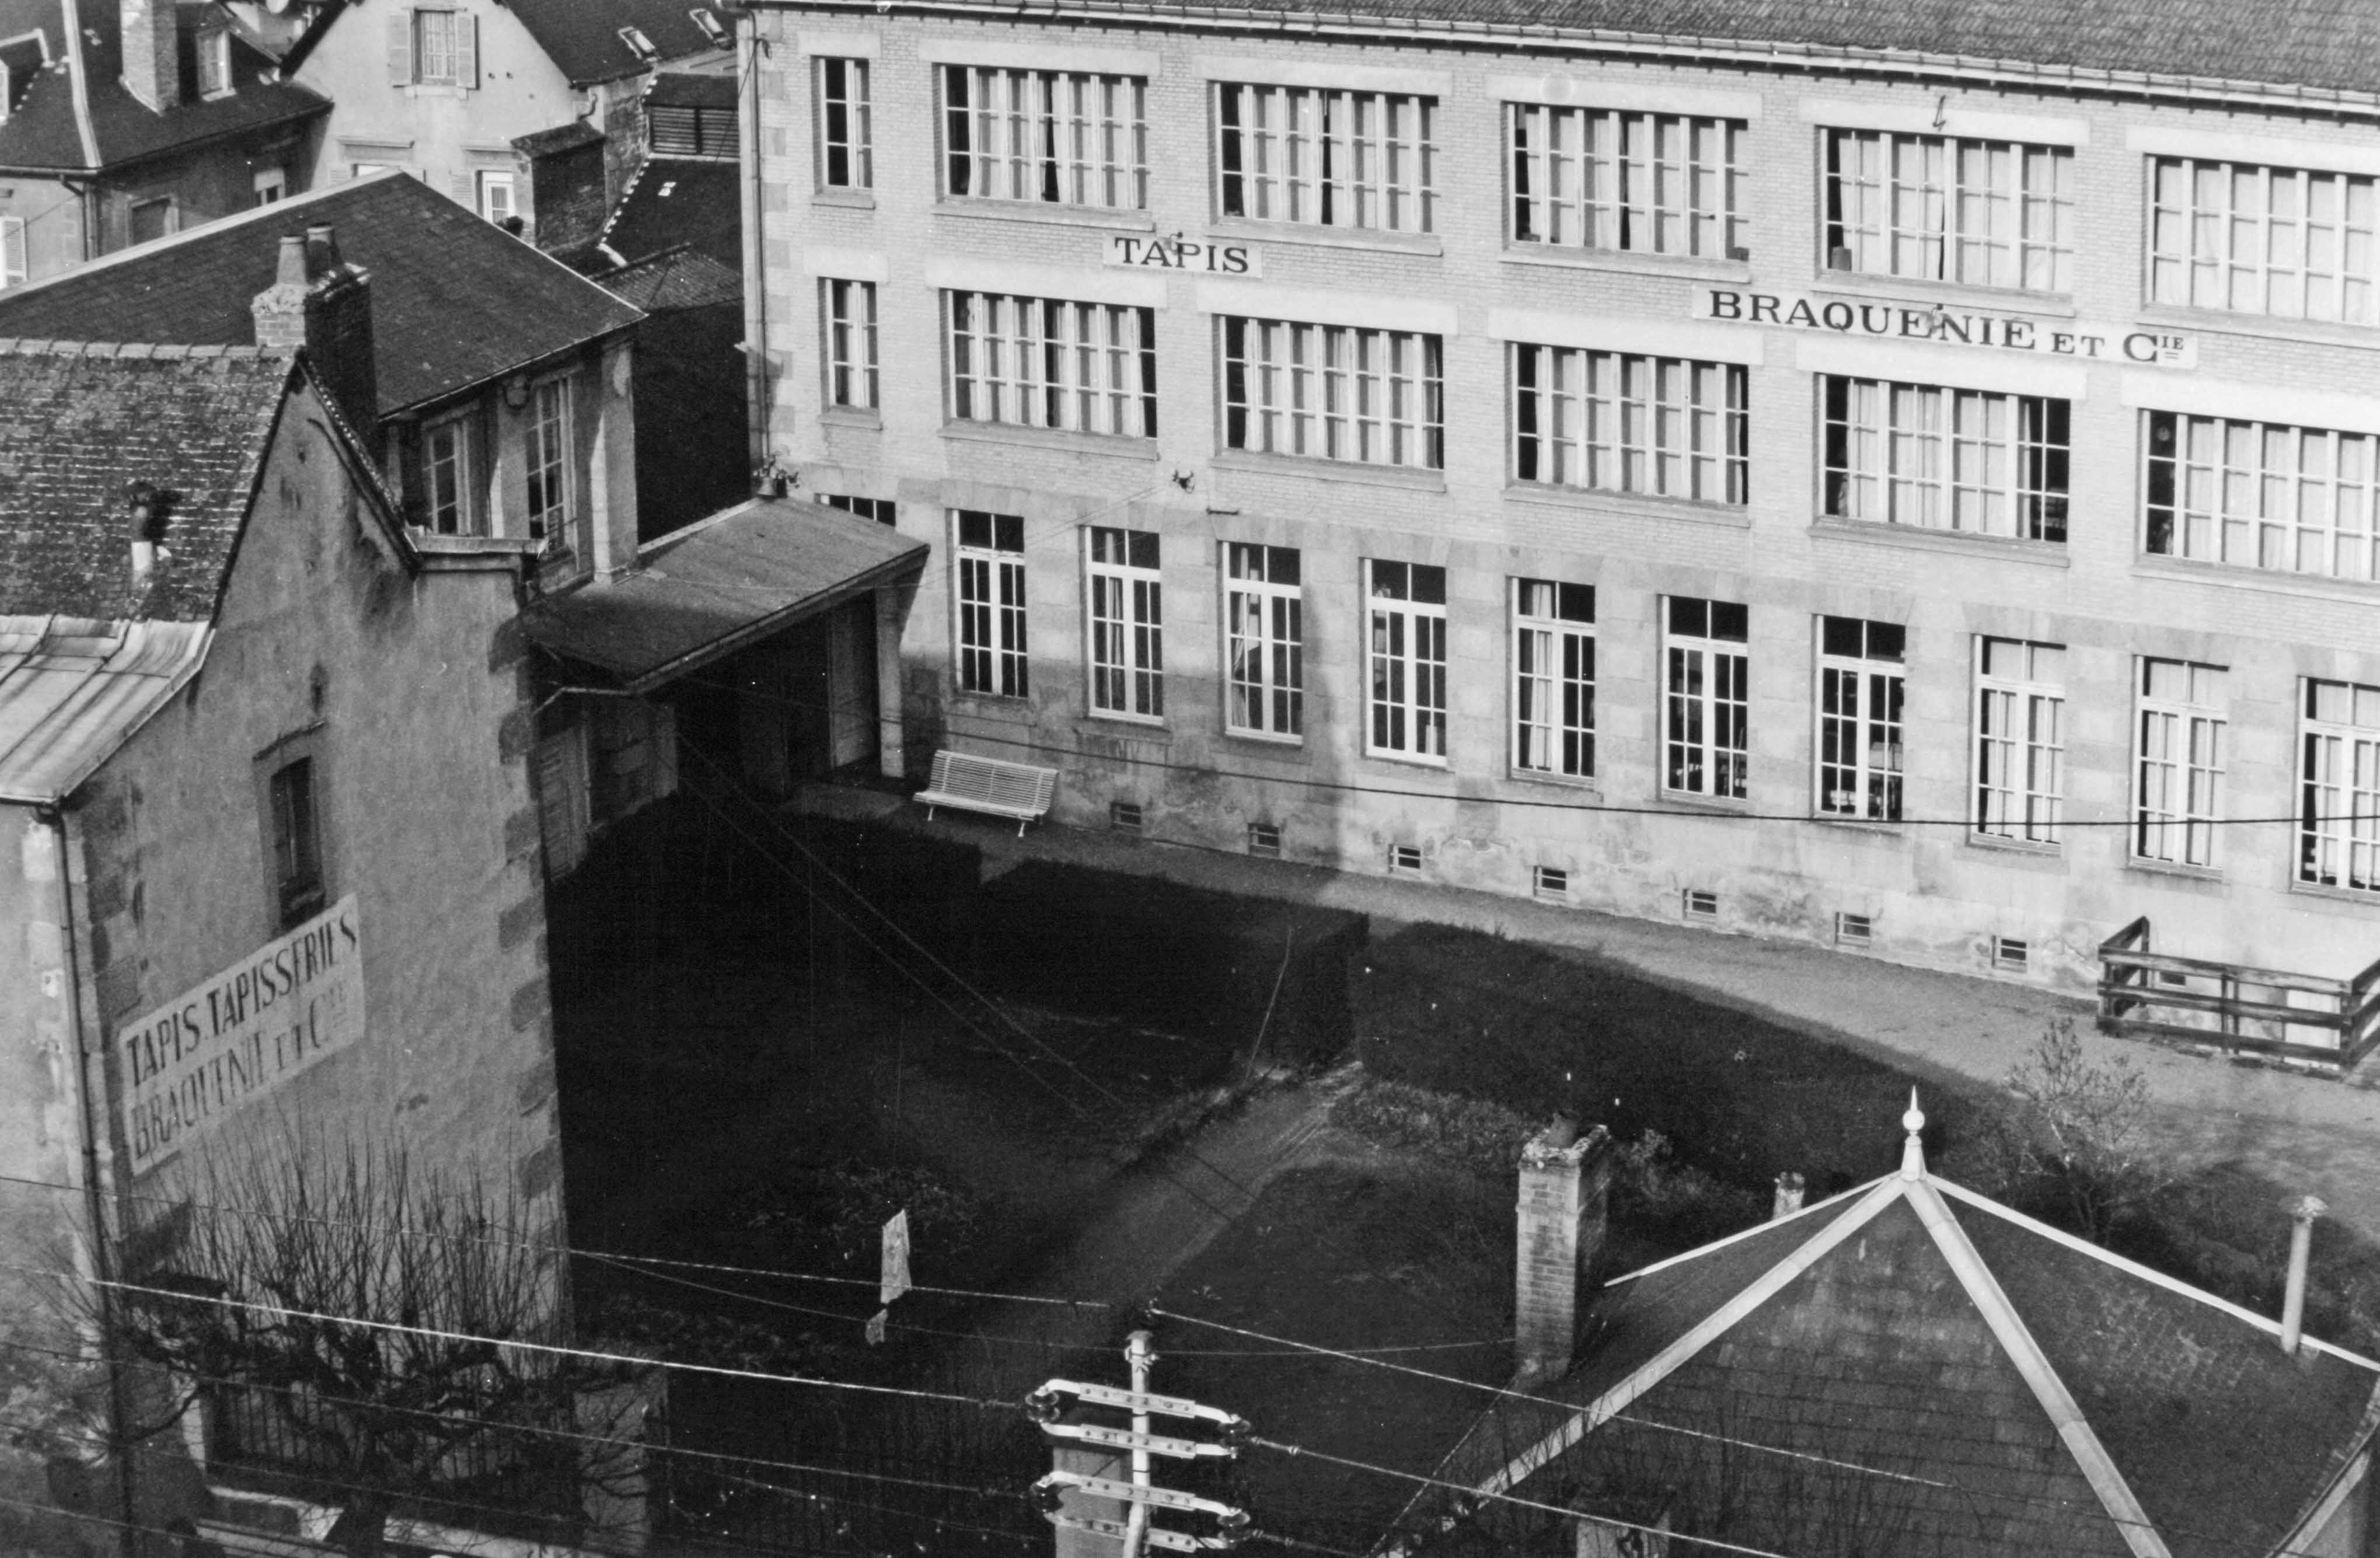 Le bâtiment des ateliers de tissage, élévation sud (reportage photographique de L. Yeghicheyan, 1992, Aubusson, Musée départemental de la Tapisserie)